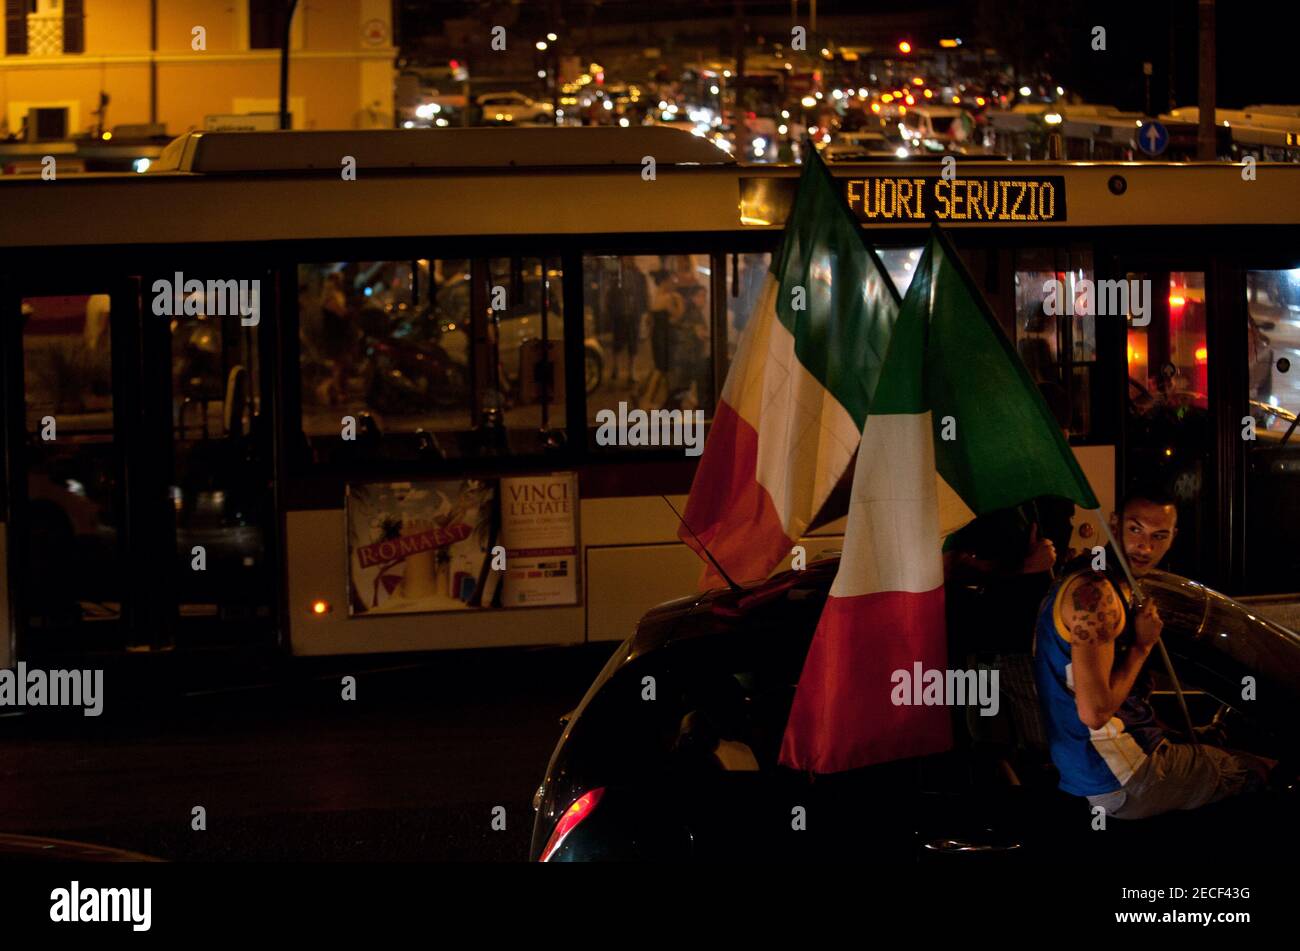 Roma (Italia), 28/06/2012: I tifosi festeggiano con sfilate di vetture intorno al Colosseo, la vittoria della nazionale italiana contro la Germania e la a Foto Stock